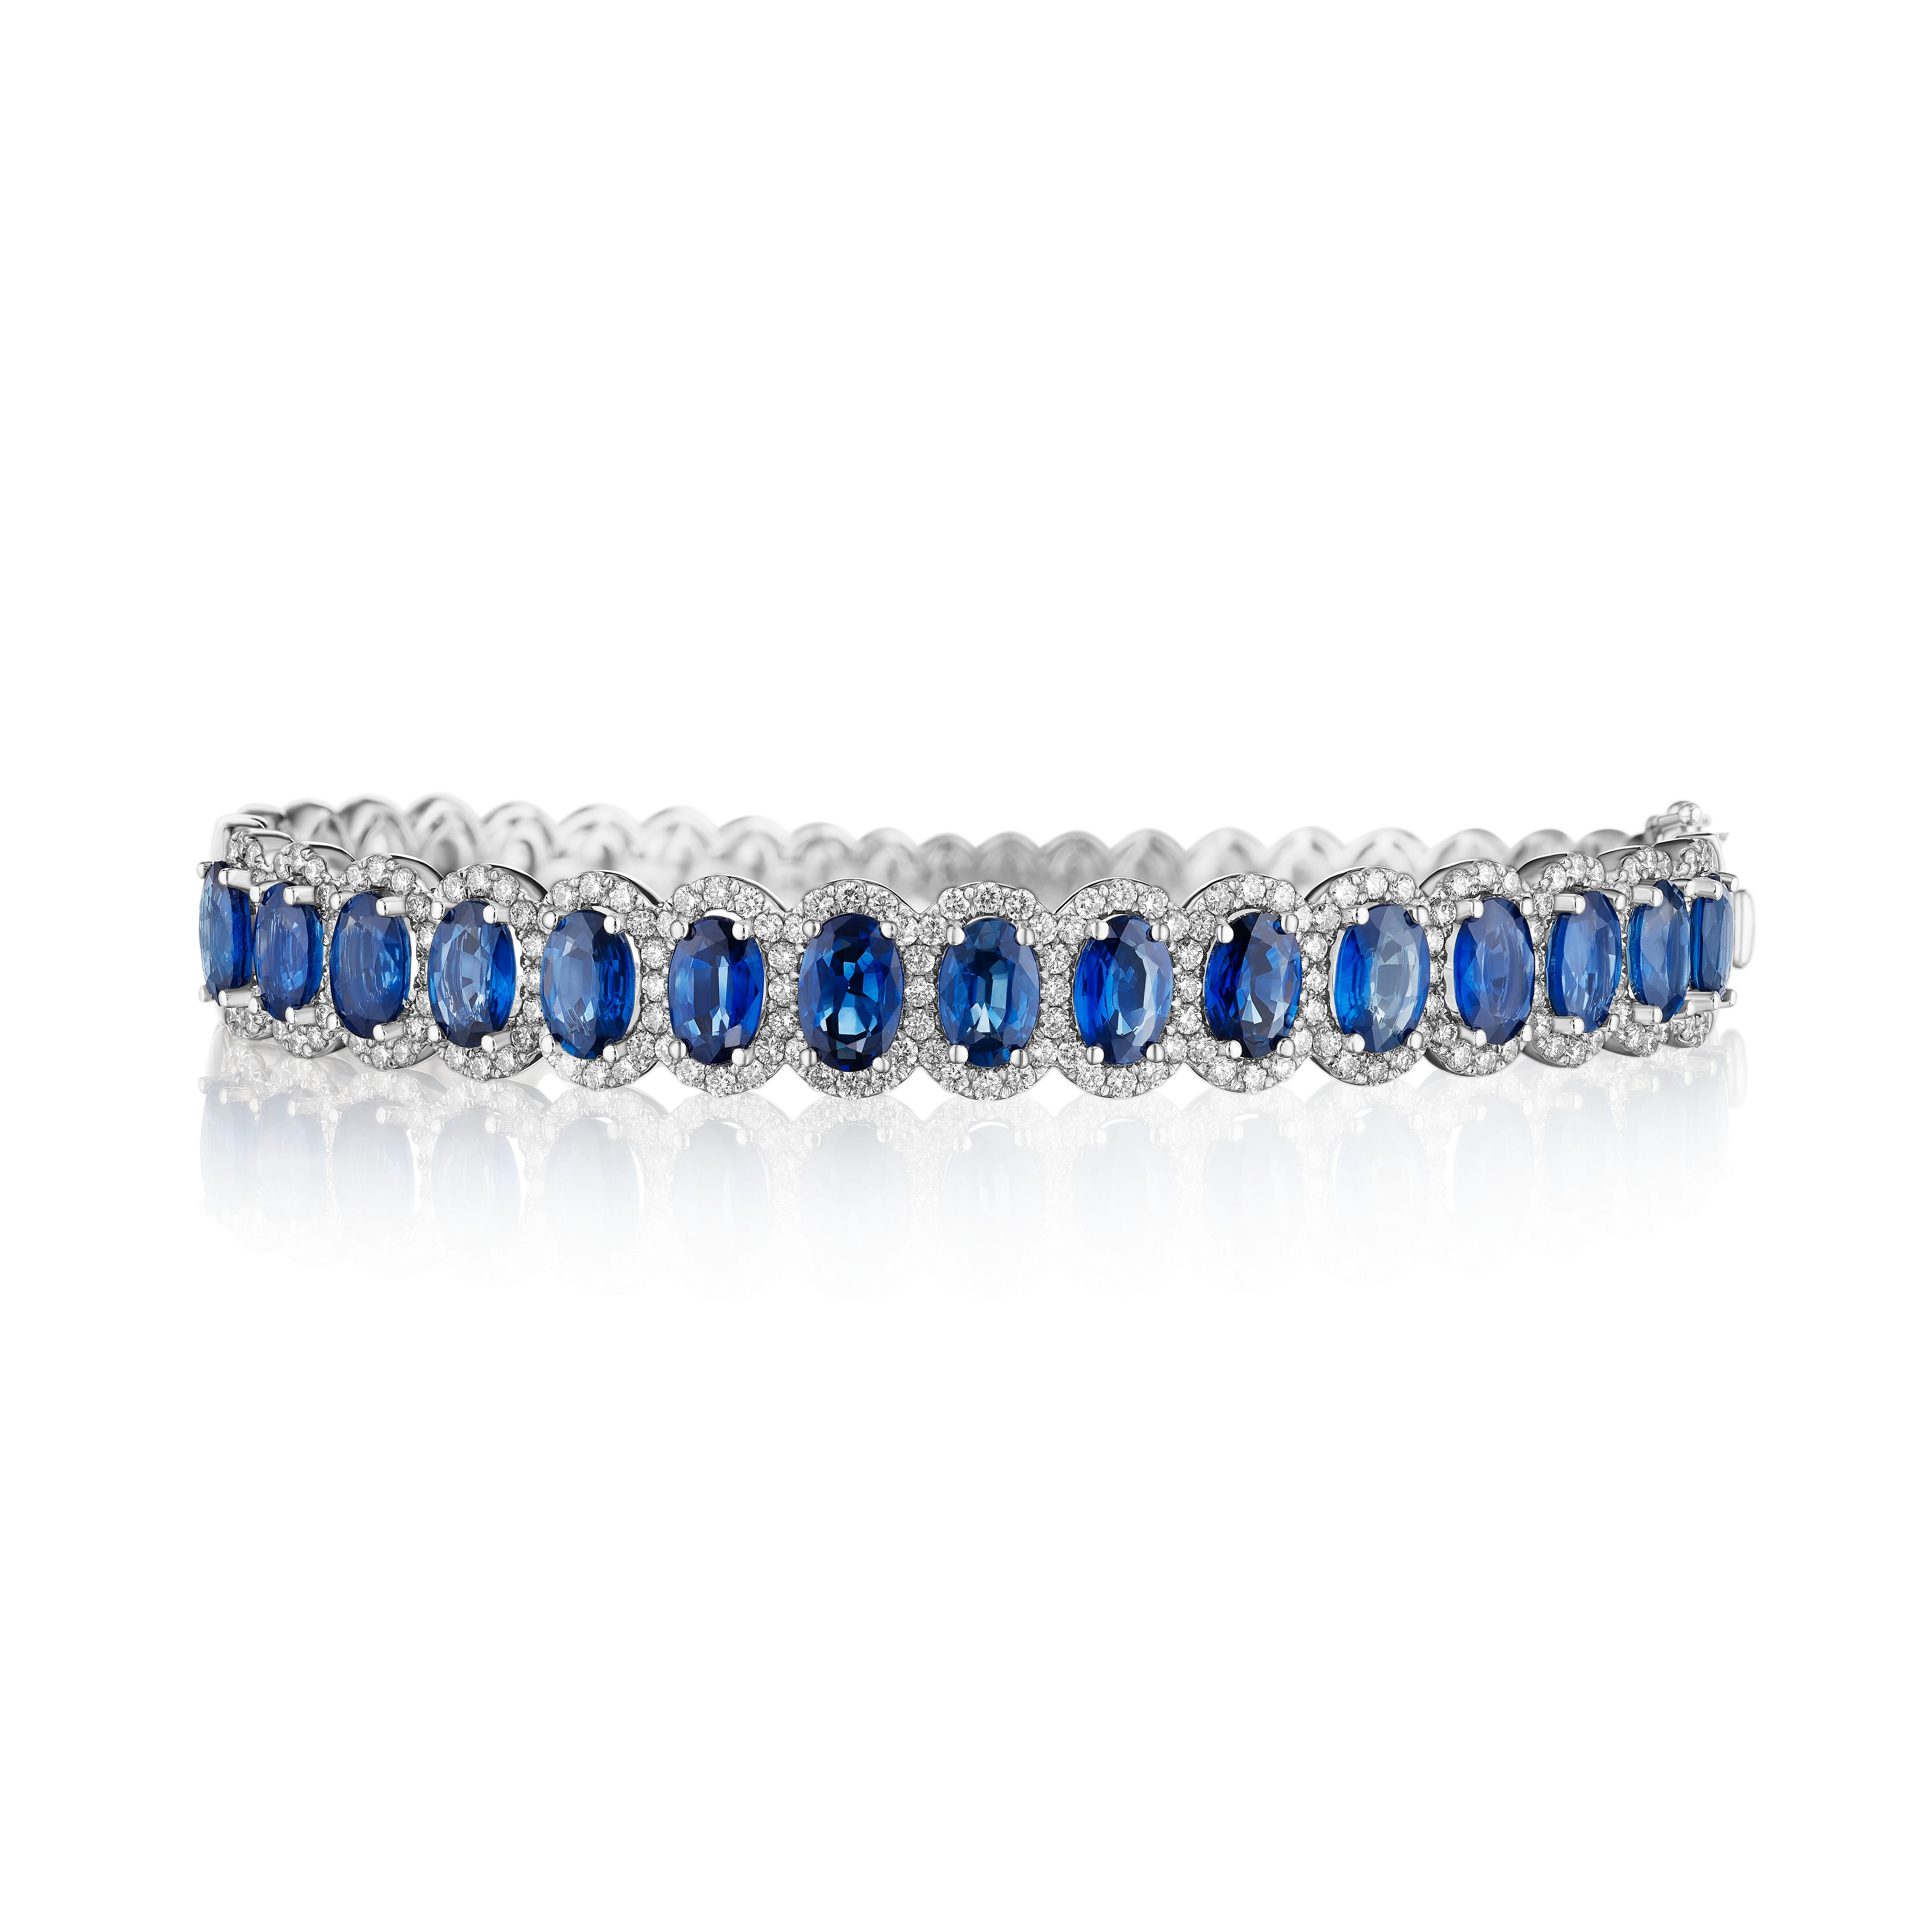 - • Ein wahrhaft exquisites Sortiment von 15 blauen Saphiren im Ovalschliff wird in diesem wunderschönen Armreif von zarten Halos aus runden Diamanten im Brillantschliff eingerahmt. Die Steine sind in 14KT Weißgold gefasst und haben ein kombiniertes